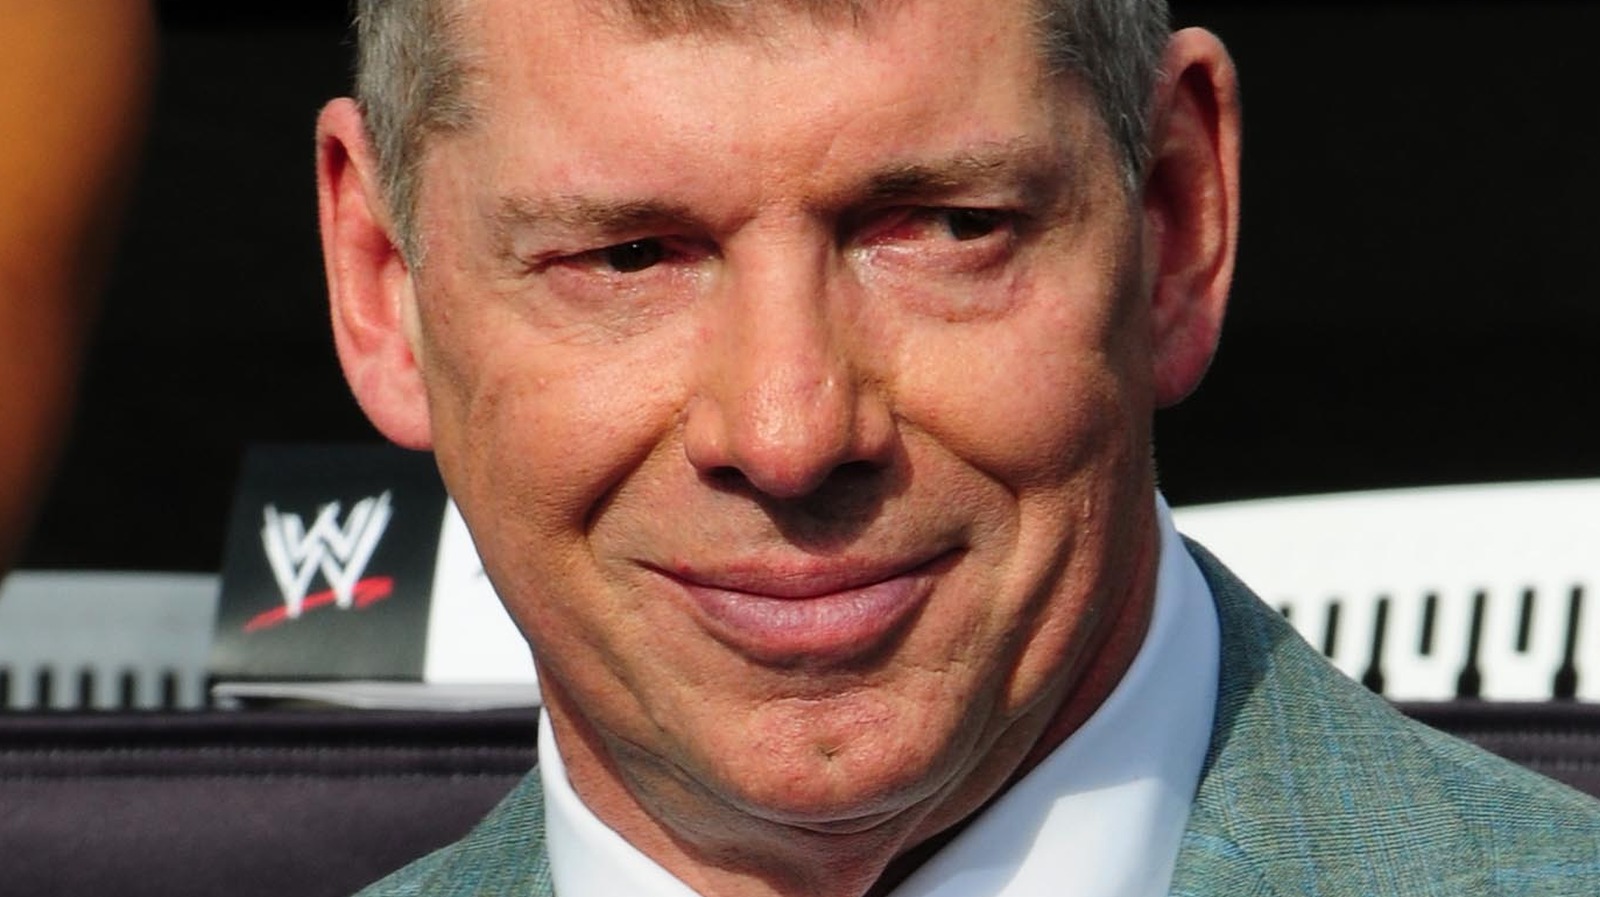 WWE y UFC negociarán los derechos de televisión como entidades separadas, podrían buscar un acuerdo de transmisión combinado